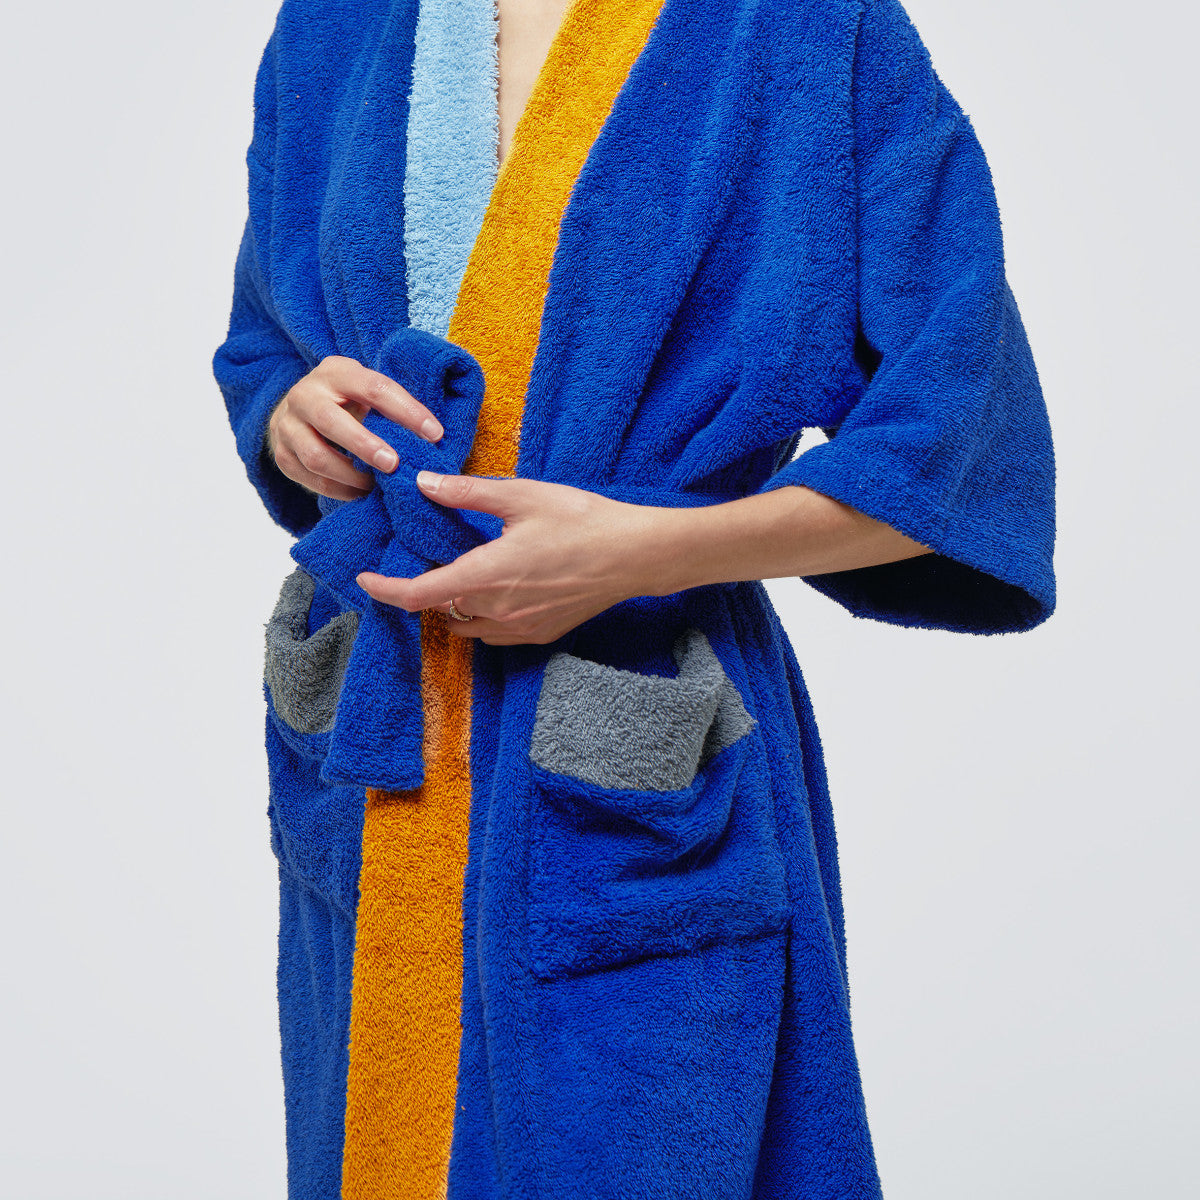 Originální a měkoučký froté župan bude vaším skvělým společníkem. Kimonový střih se zavinováním v pase zaručuje pohodlí a komfort při nošení. 